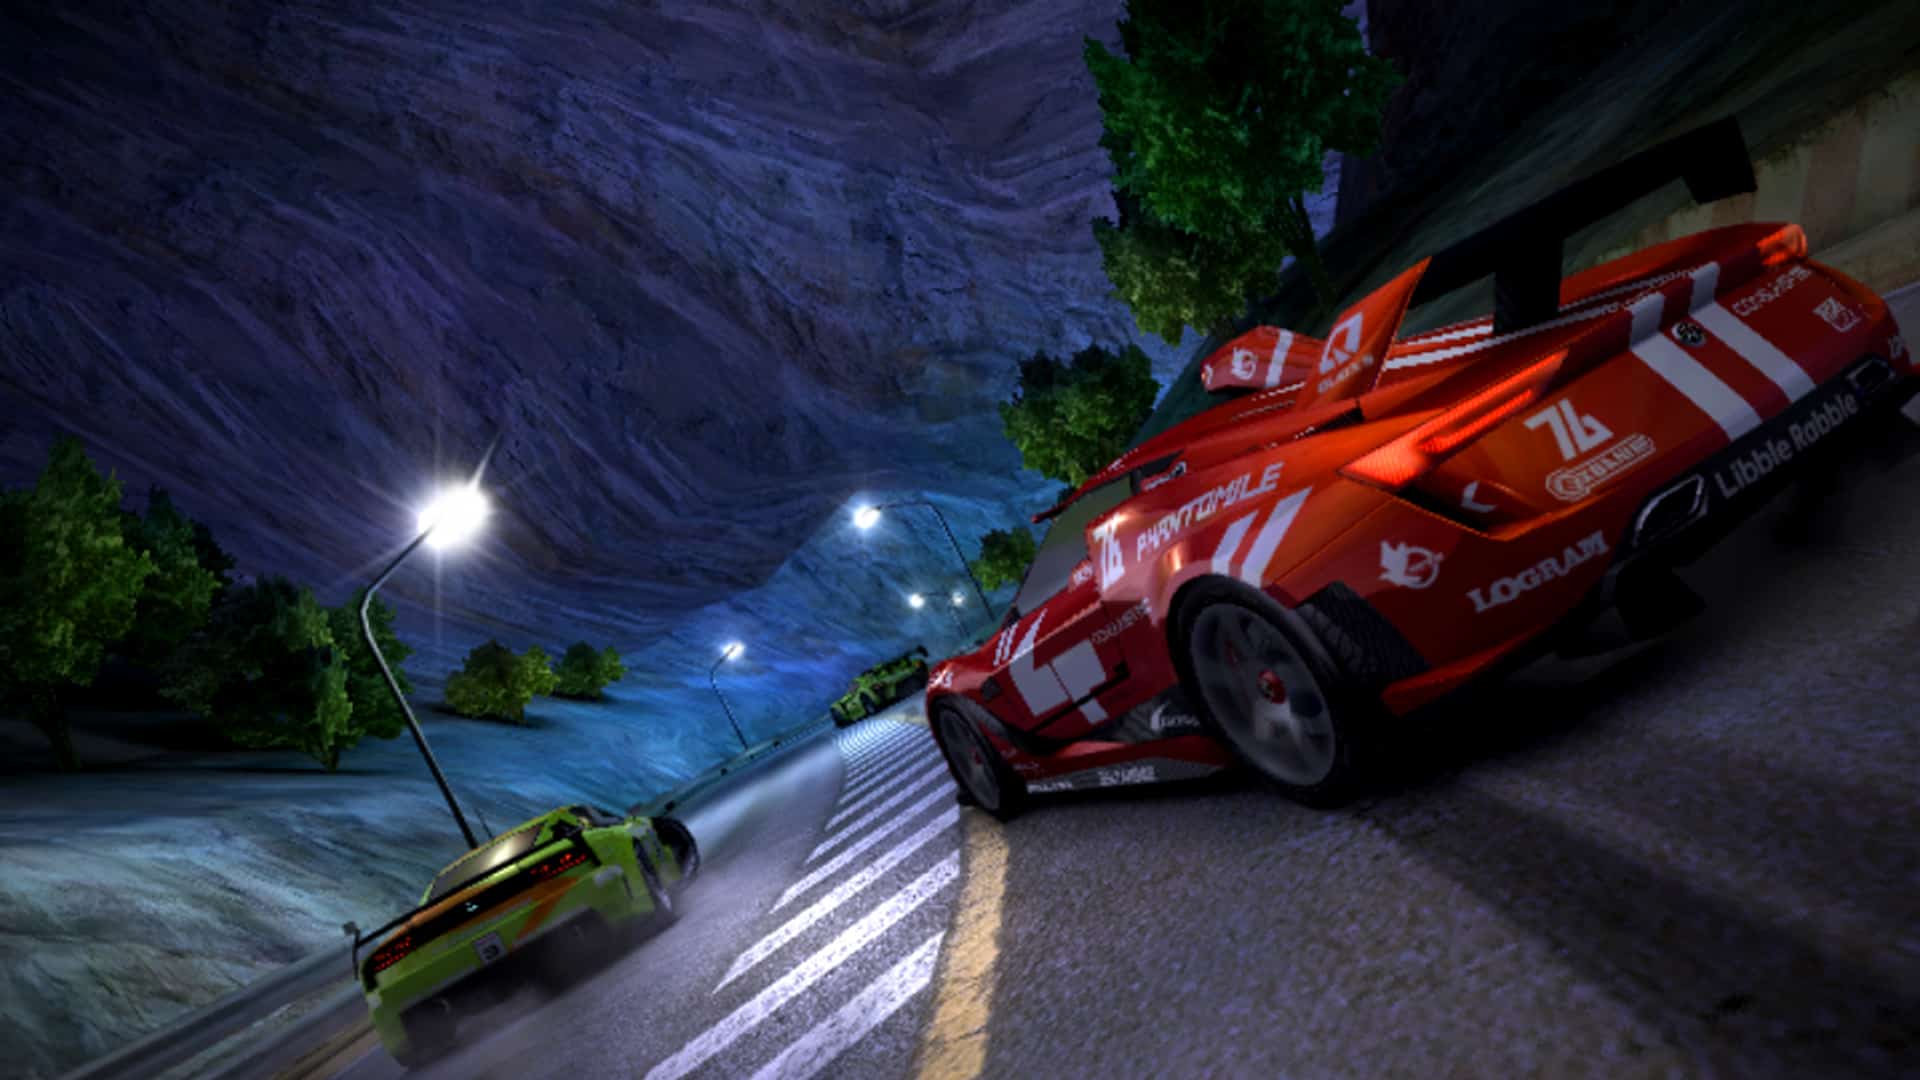  Ridge Racer Unbounded - Xbox 360 : Namco Bandai Games Amer:  Everything Else